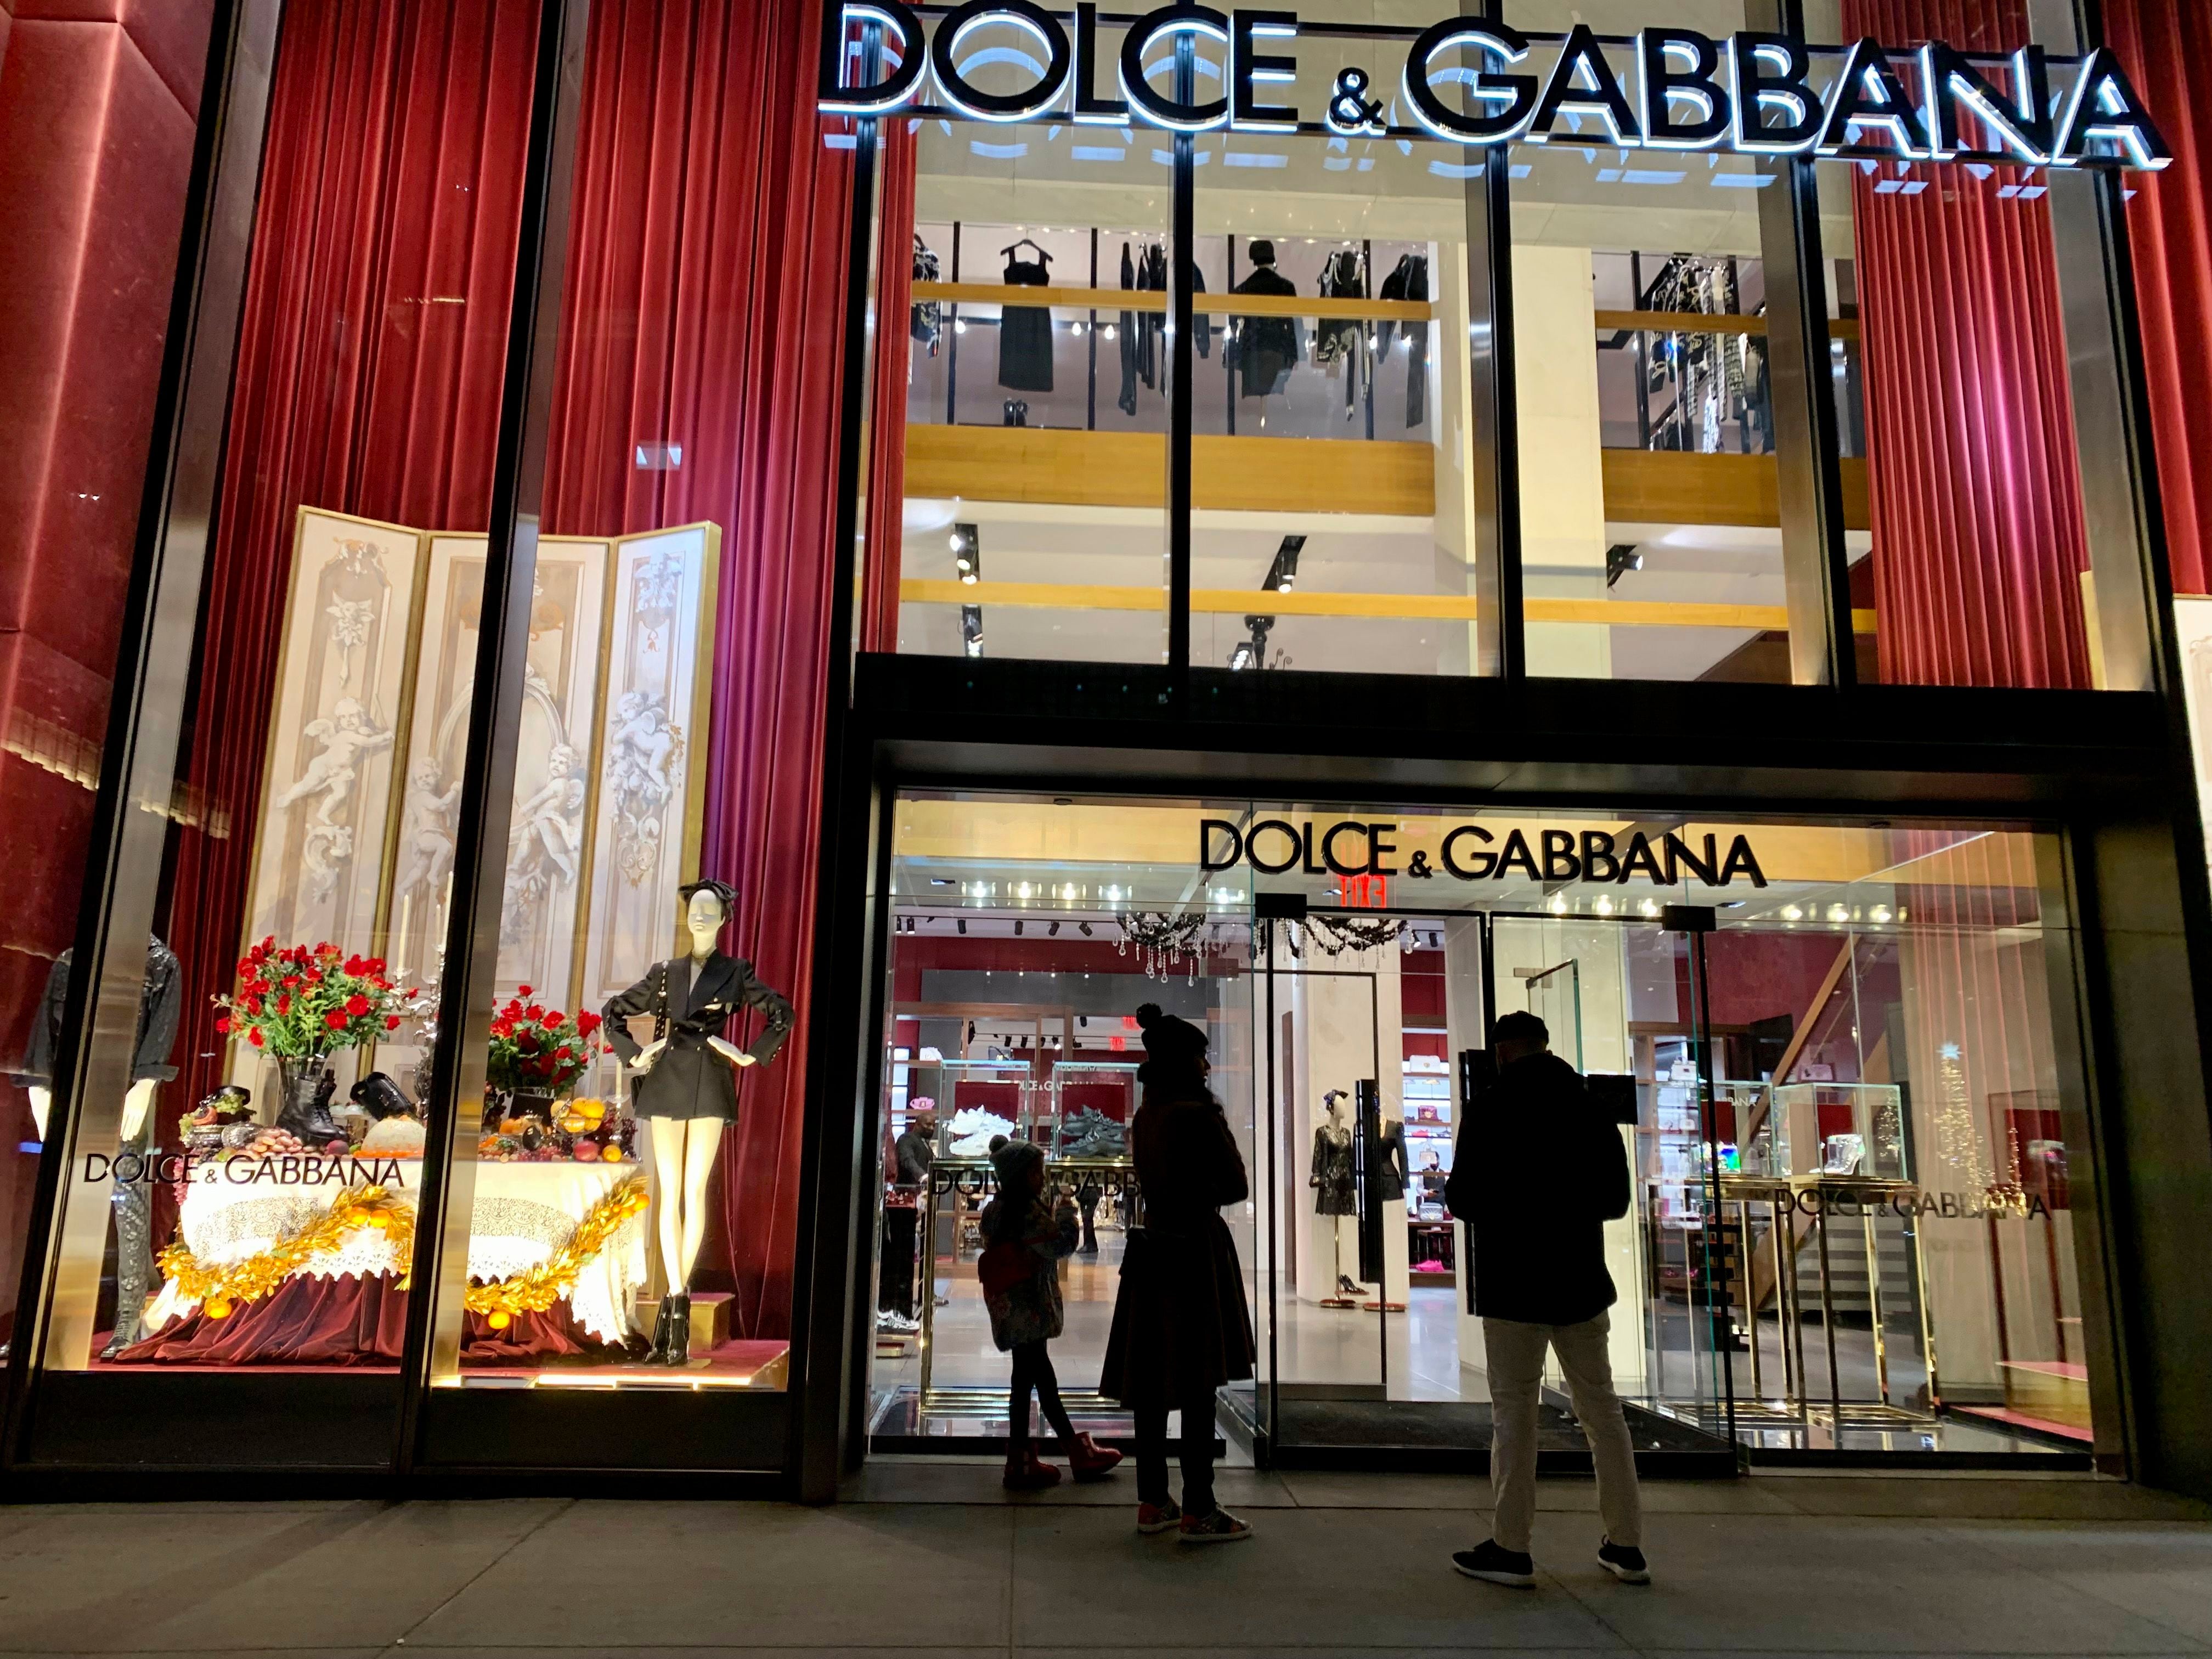 Dolce&Gabbana drop animal fur starting in 2022